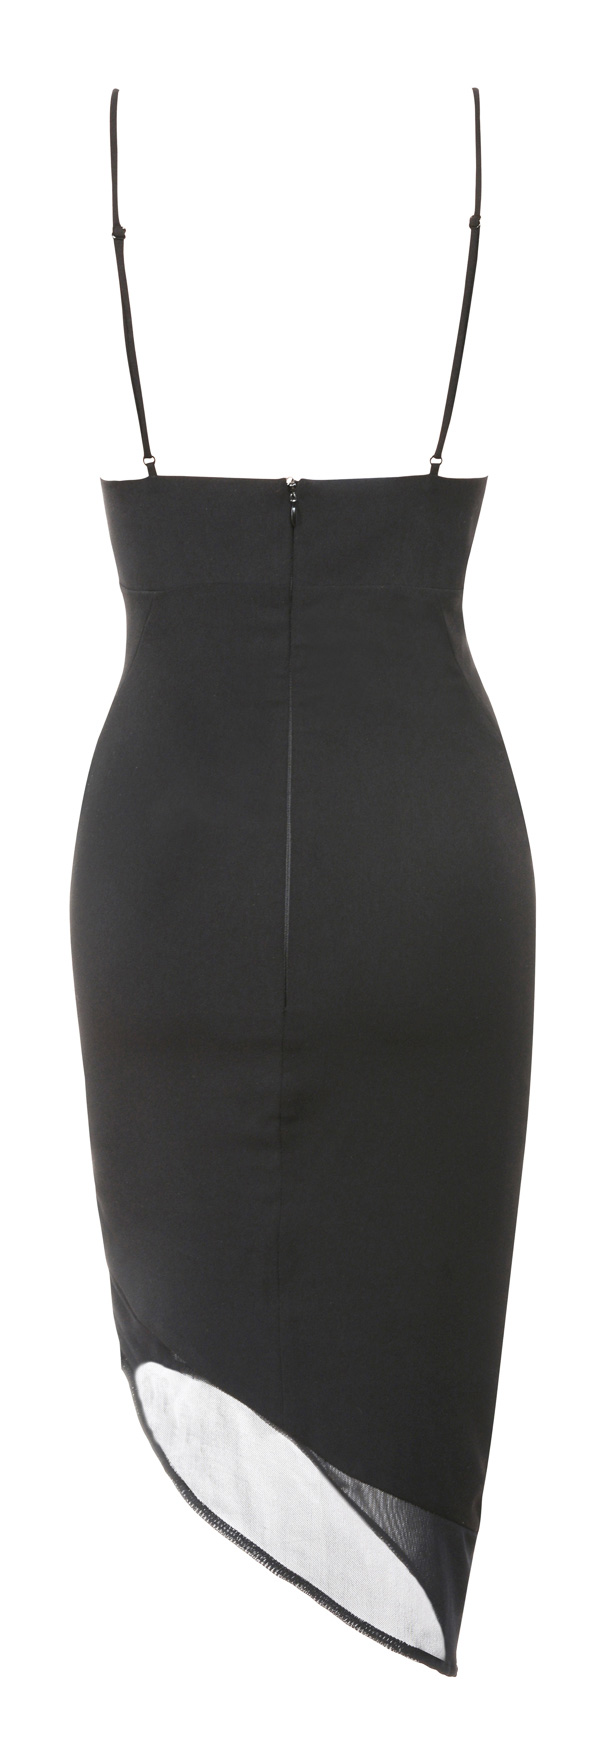 'Caprice' Black Slip Dress with Lace Applique